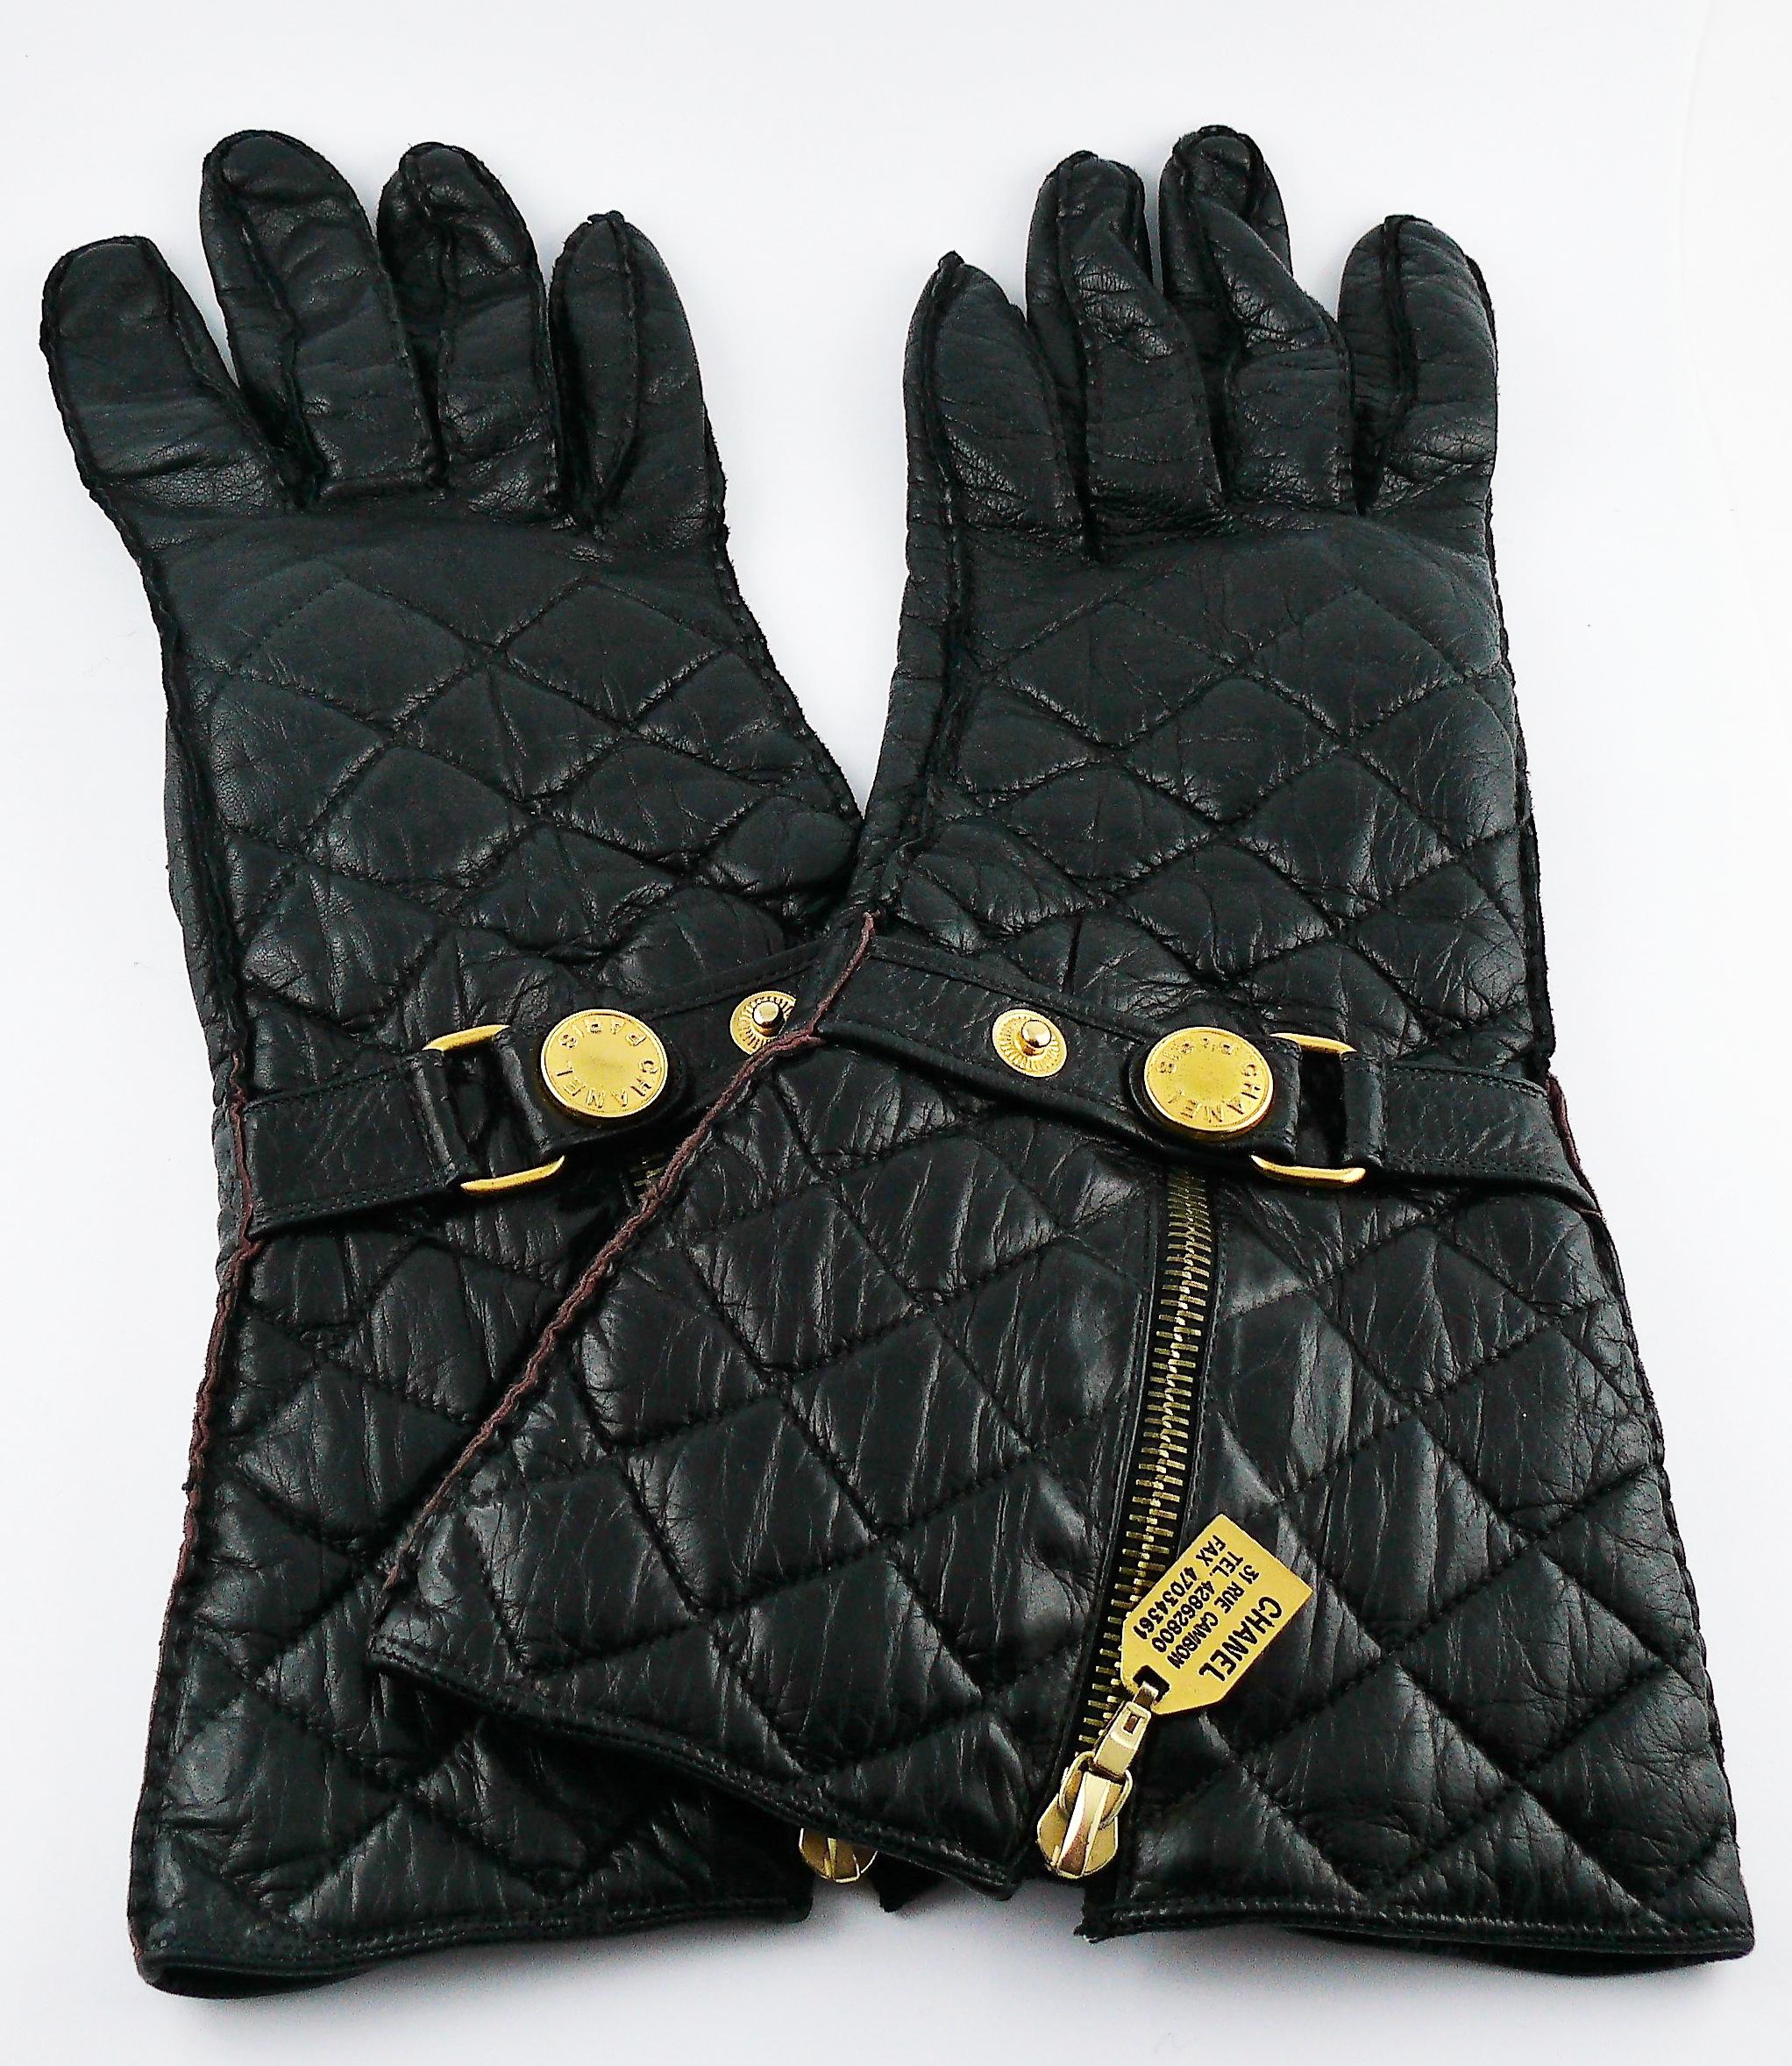 CHANEL Vintage seltene ikonische schwarze gesteppte lange Handschuhe aus Ziegenleder.

Diese Handschuhe verfügen über :
- Reißverschluss auf der Vorderseite mit einem Zug, auf dem die 31 Rue Cambon, Telefon- und Faxnummern eingeprägt sind.
-